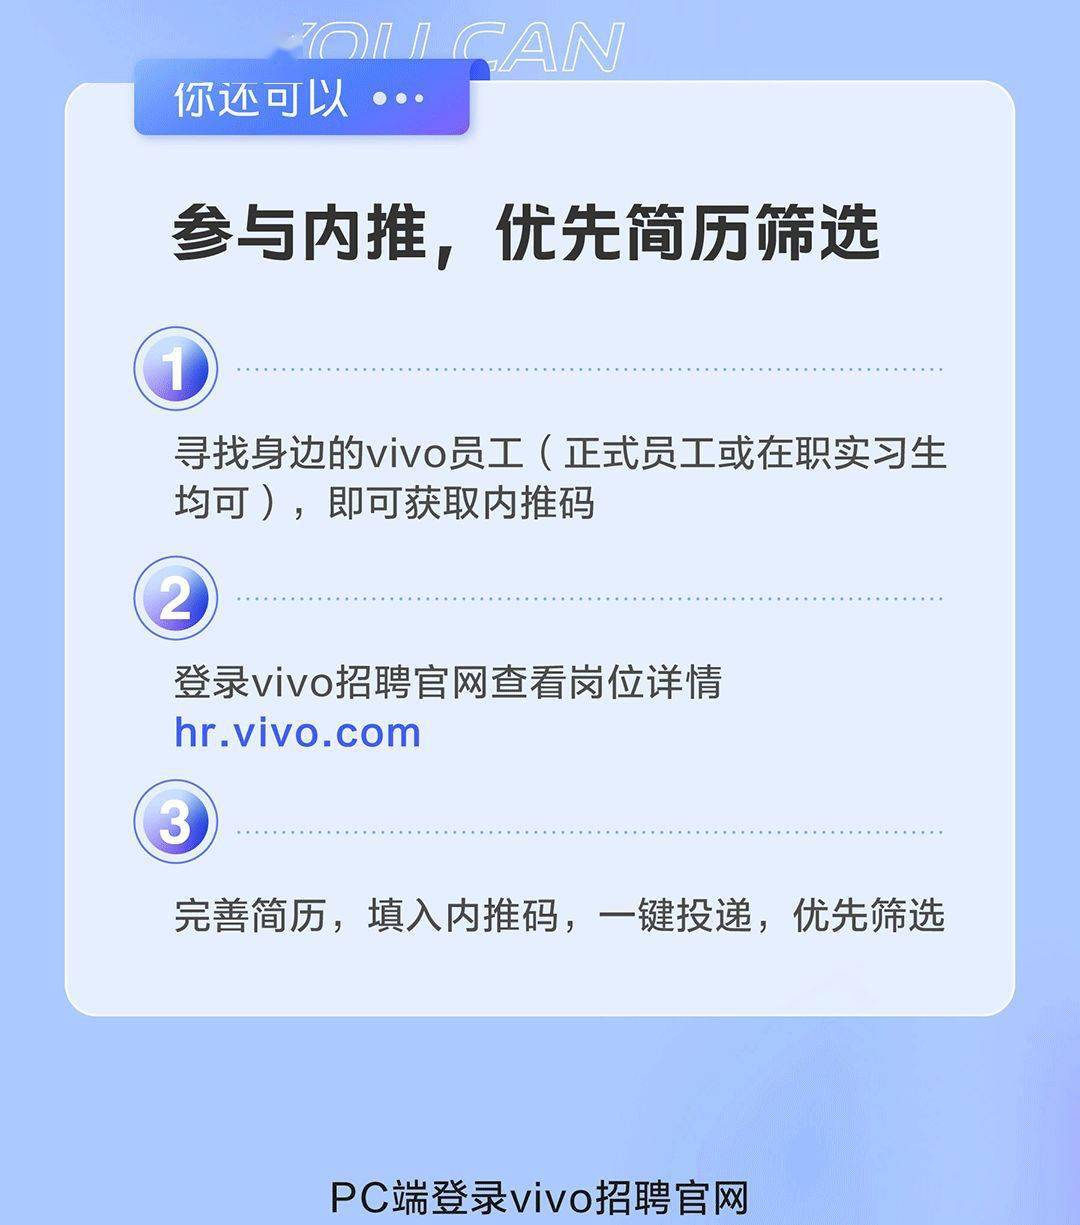 vivo 招聘_招聘 社招 vivo2021社会招聘全面开启(2)